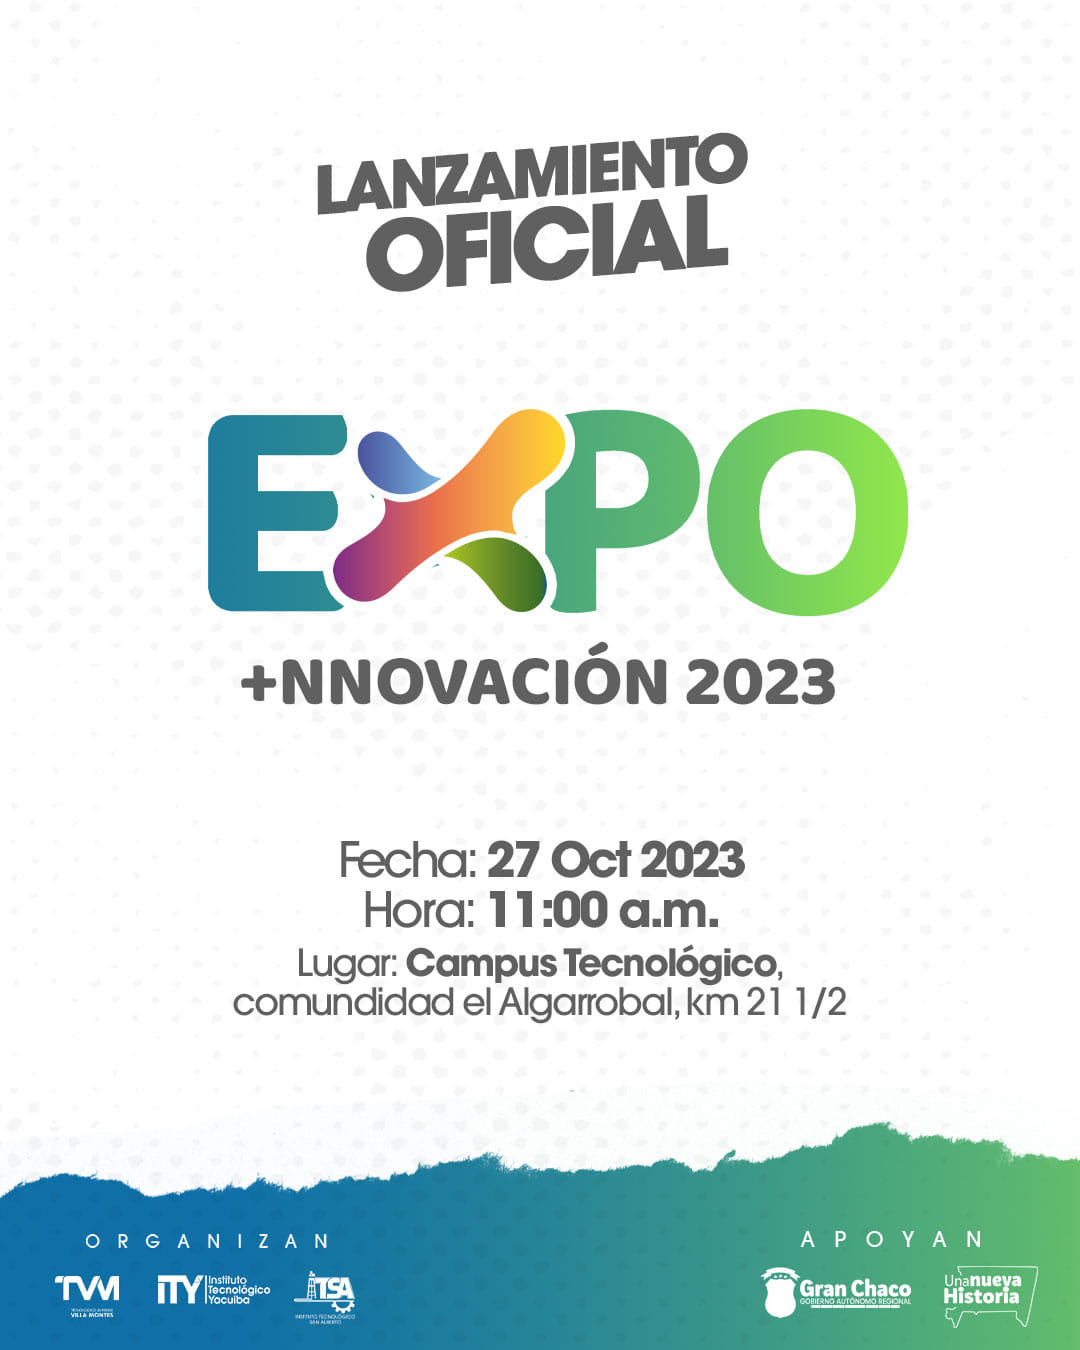 Con mucho entusiasmo anunciamos el Lanzamiento Oficial de la Expoi 2023.